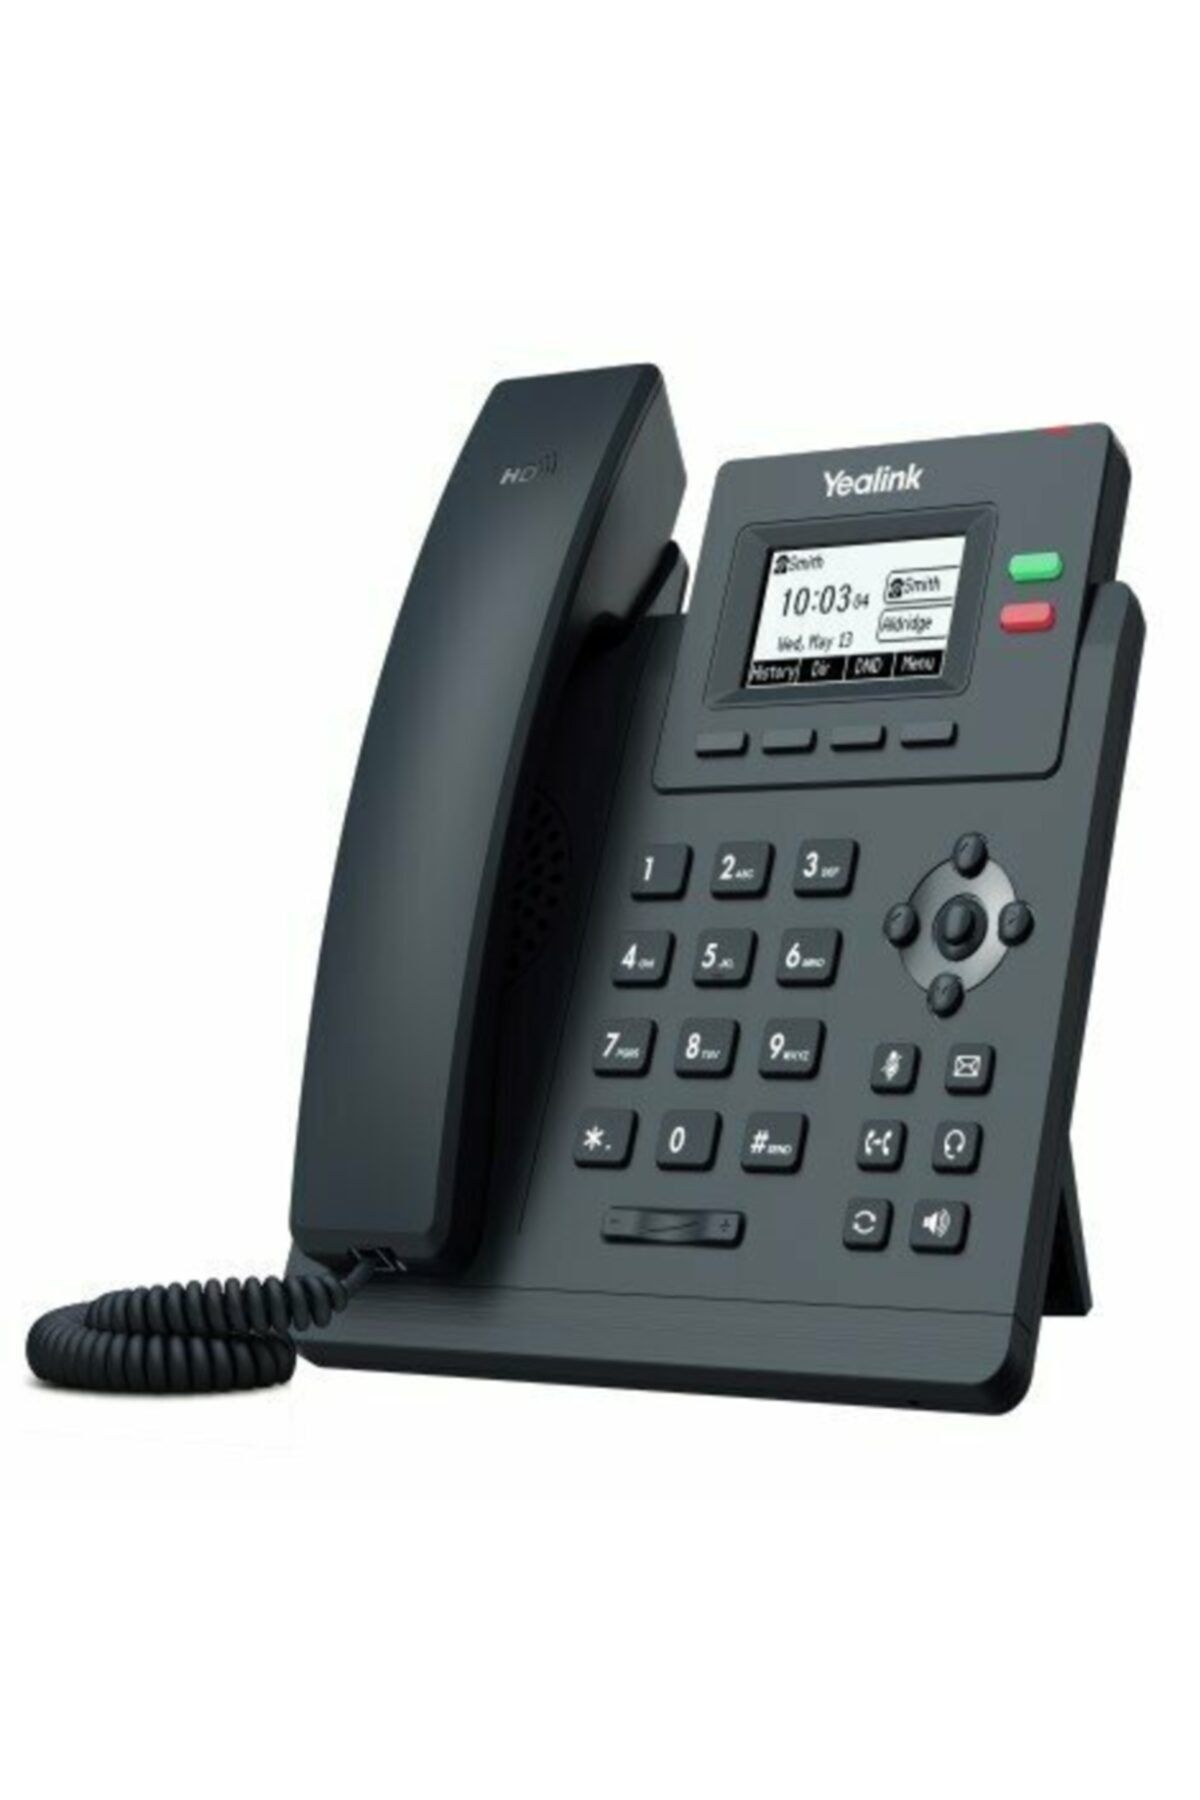 Yealink T31p Ip Telefon Poe Destekli Masaüstü Telefon Çağrı Merkezi Telefonu